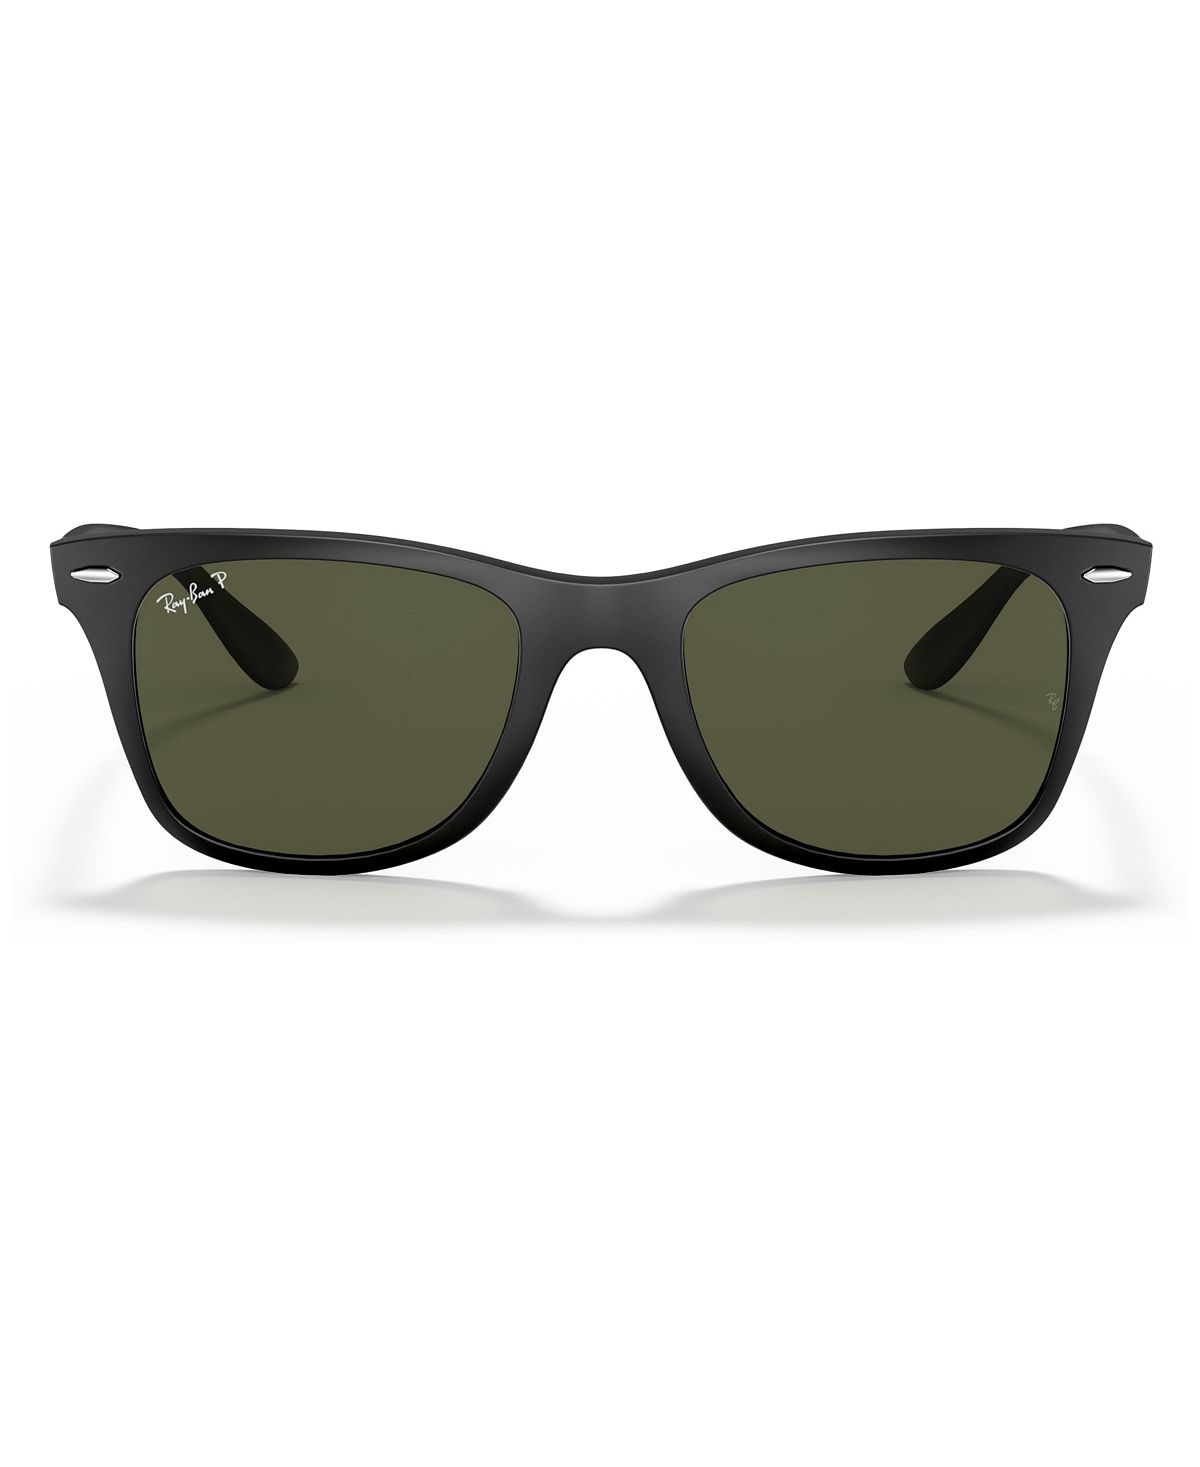 Поляризованные солнцезащитные очки с поляризацией, rb4195 wayfarer liteforce Ray-Ban, мульти солнцезащитные очки ray ban 4195 6017 88 wayfarer liteforce